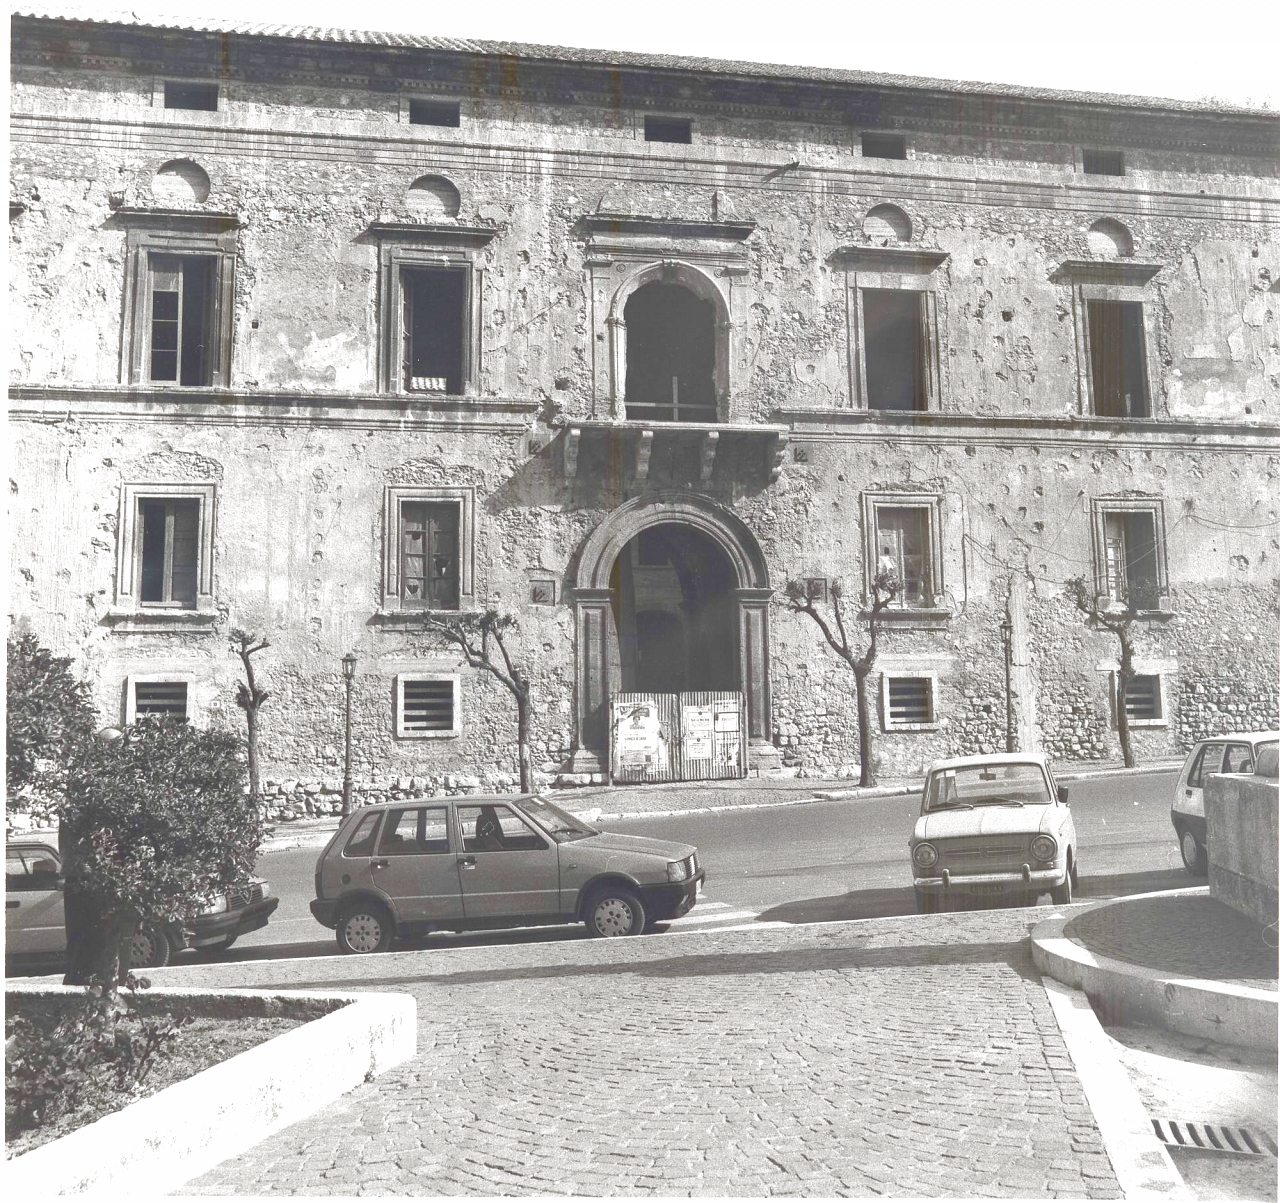 Palazzo ducale Orsini (palazzo) - Solofra (AV)  (XVI)